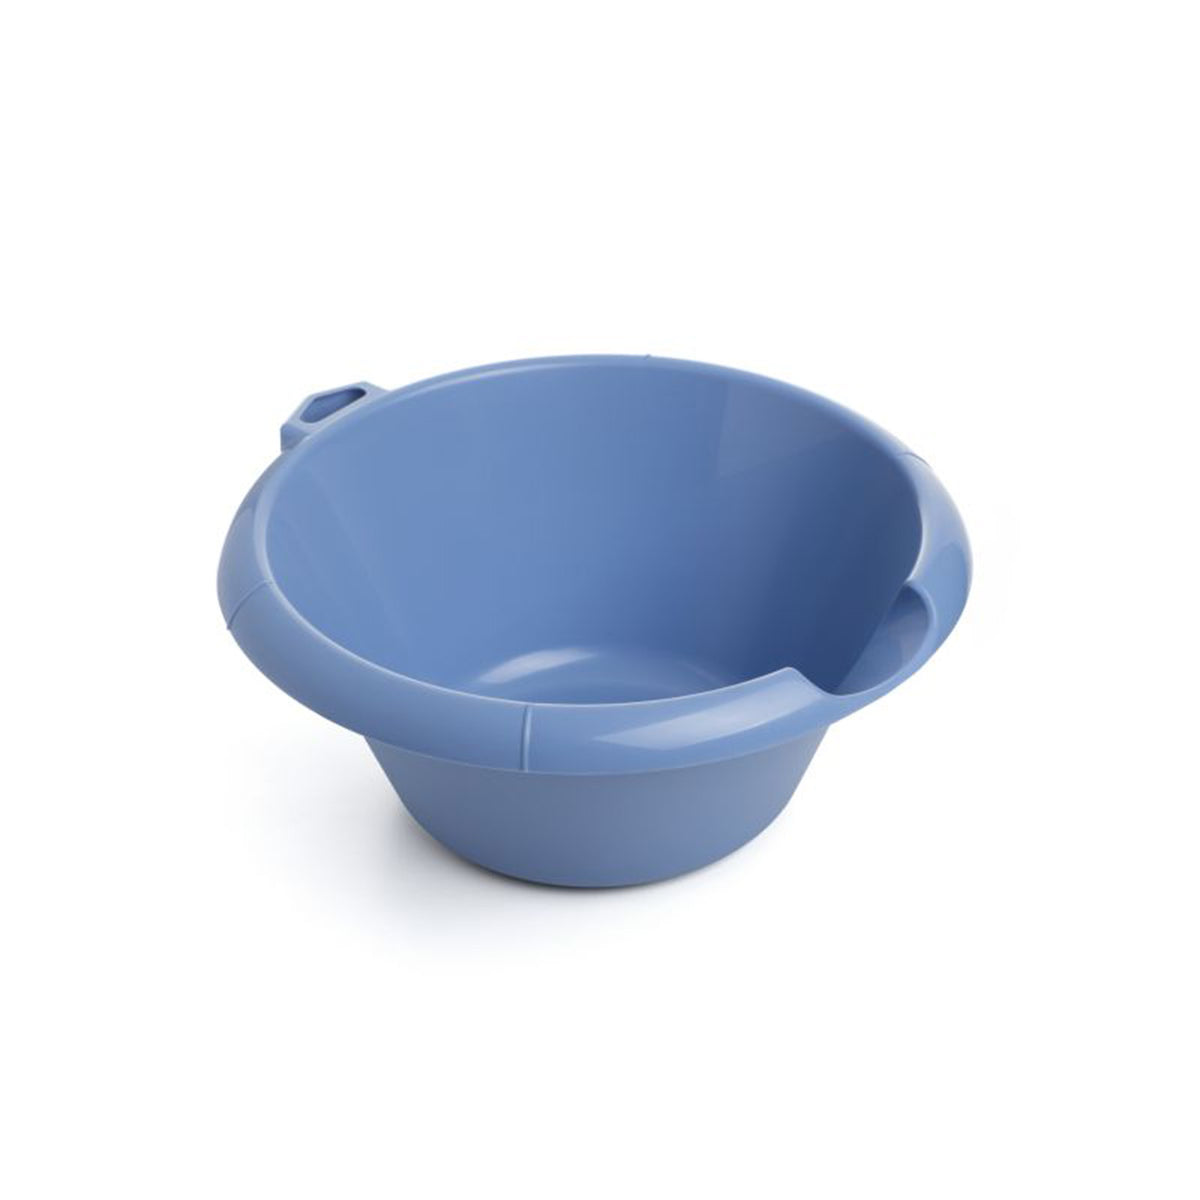 Round washbasin - blue